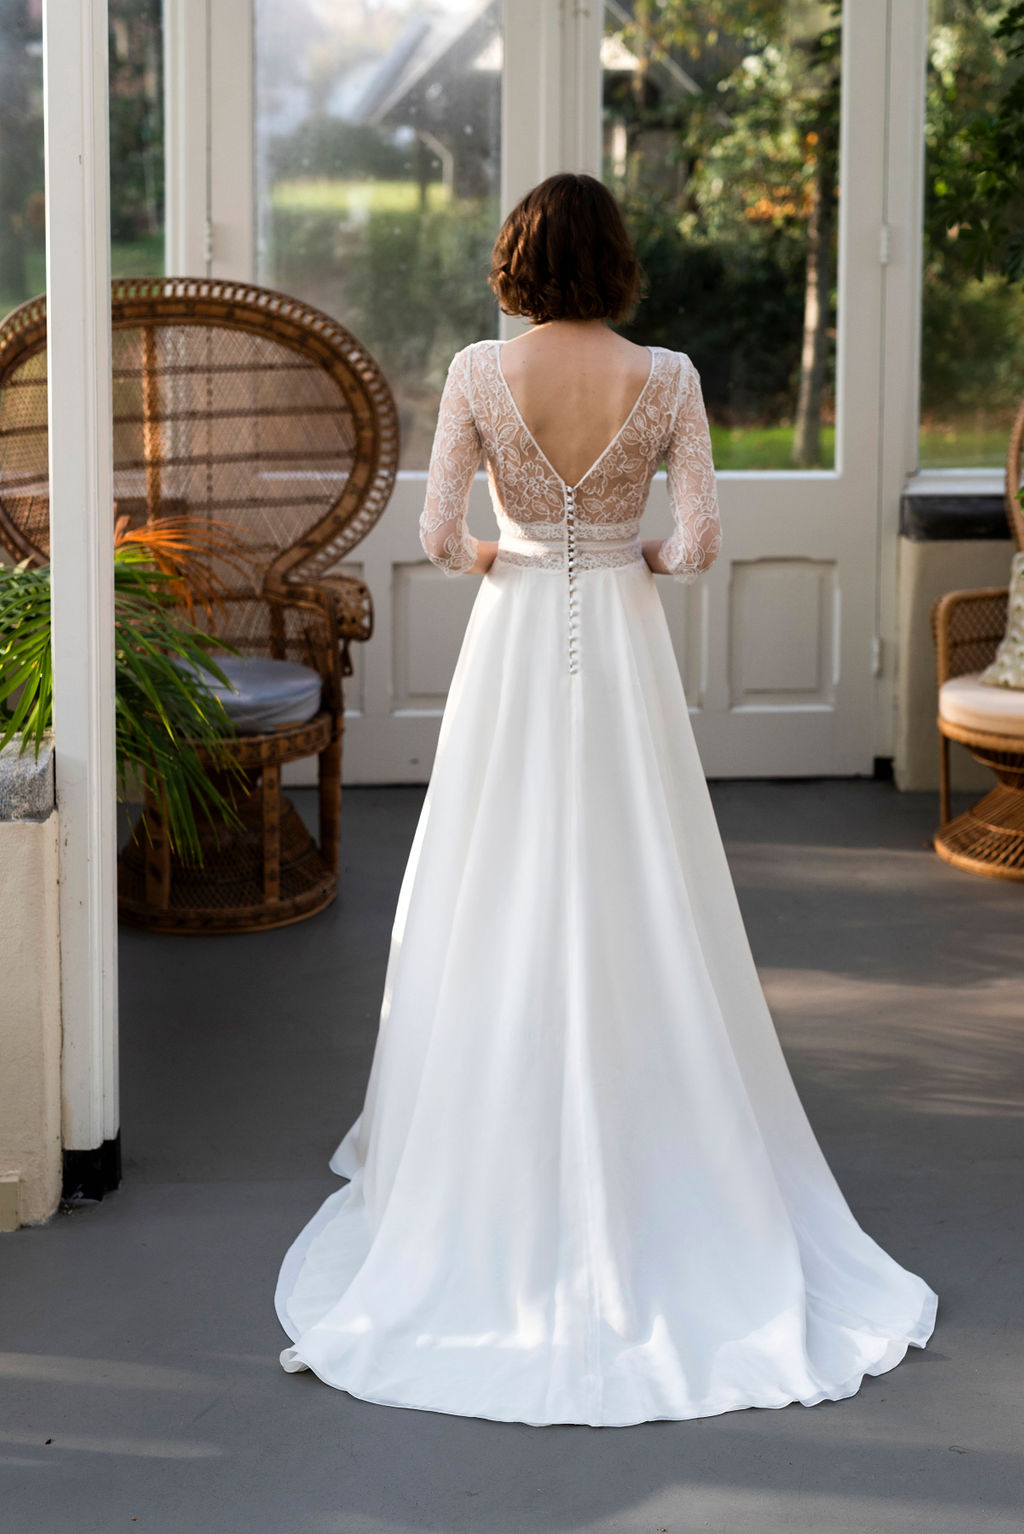 The wedding dress Merveille